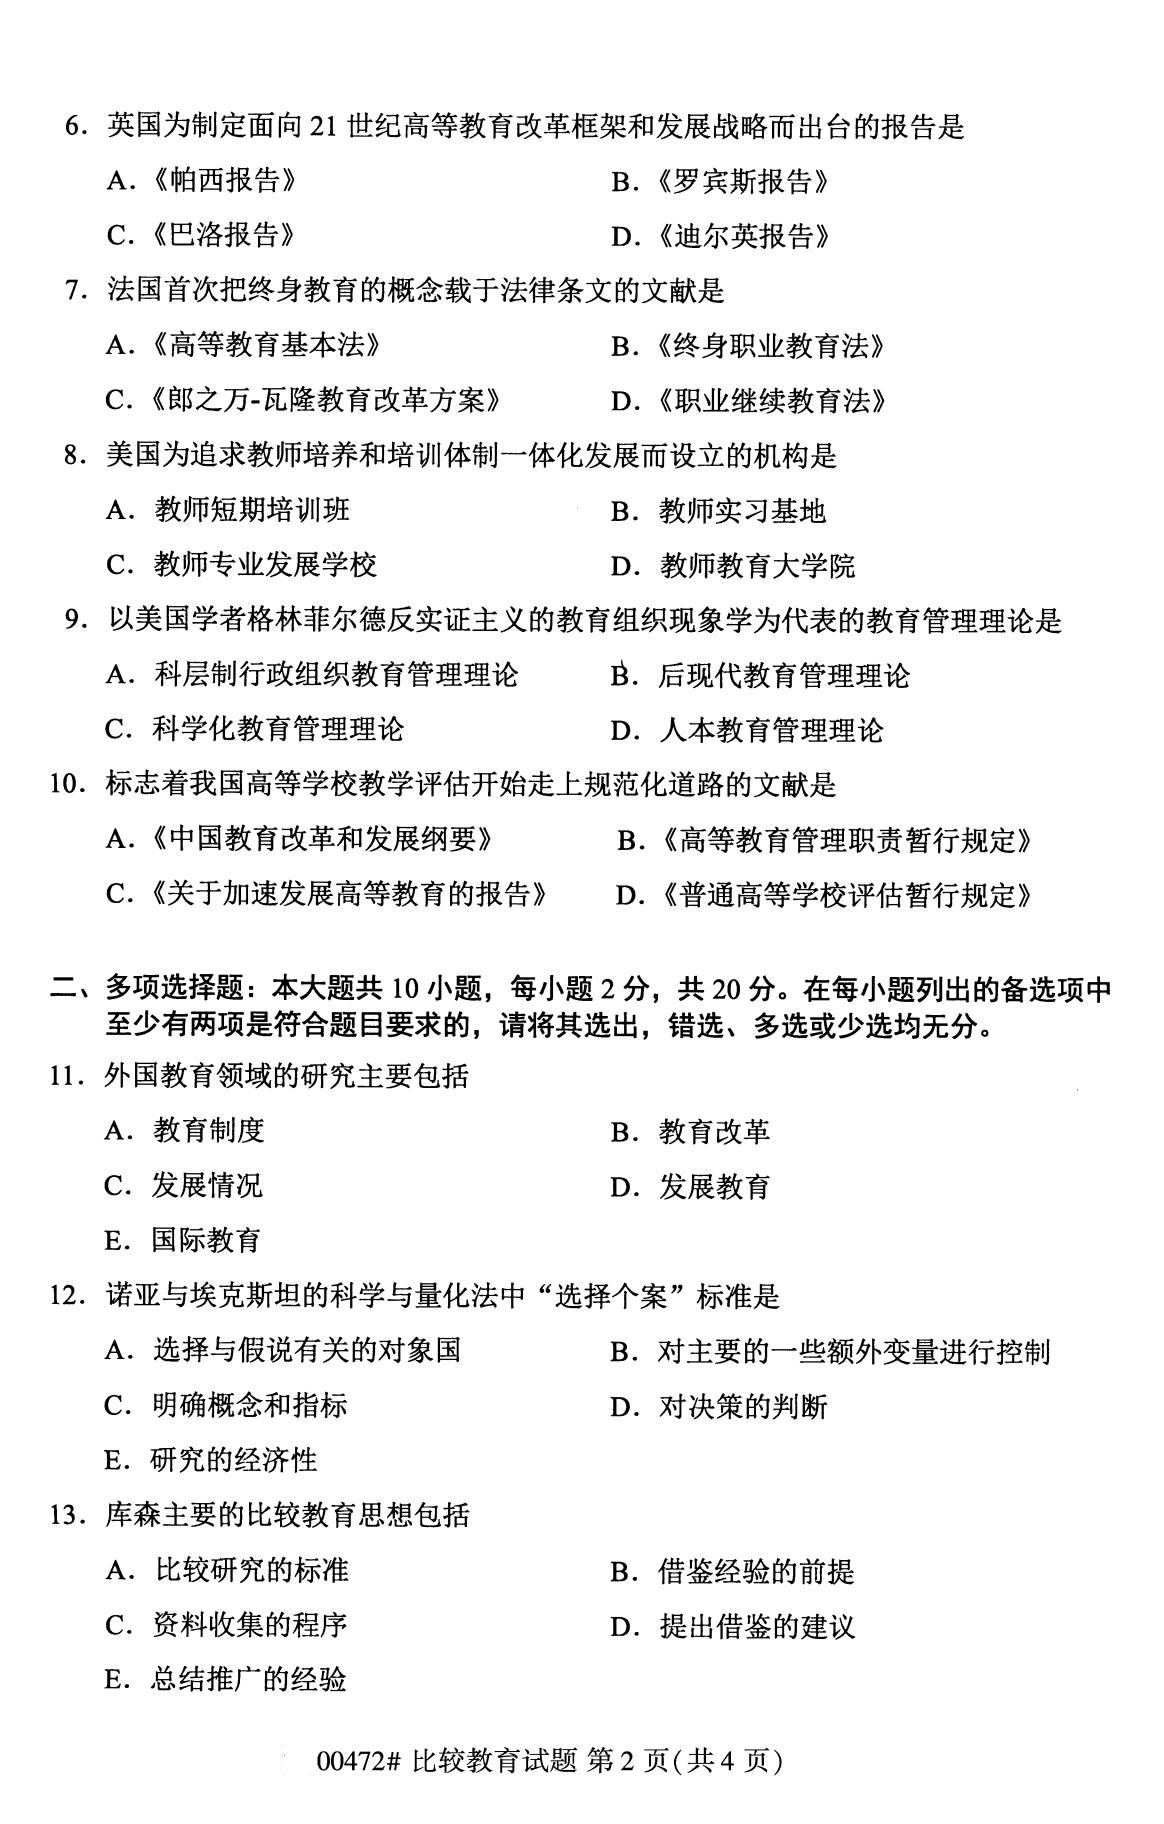 广东省2020年8月自学考试本科比较教育真题(图2)